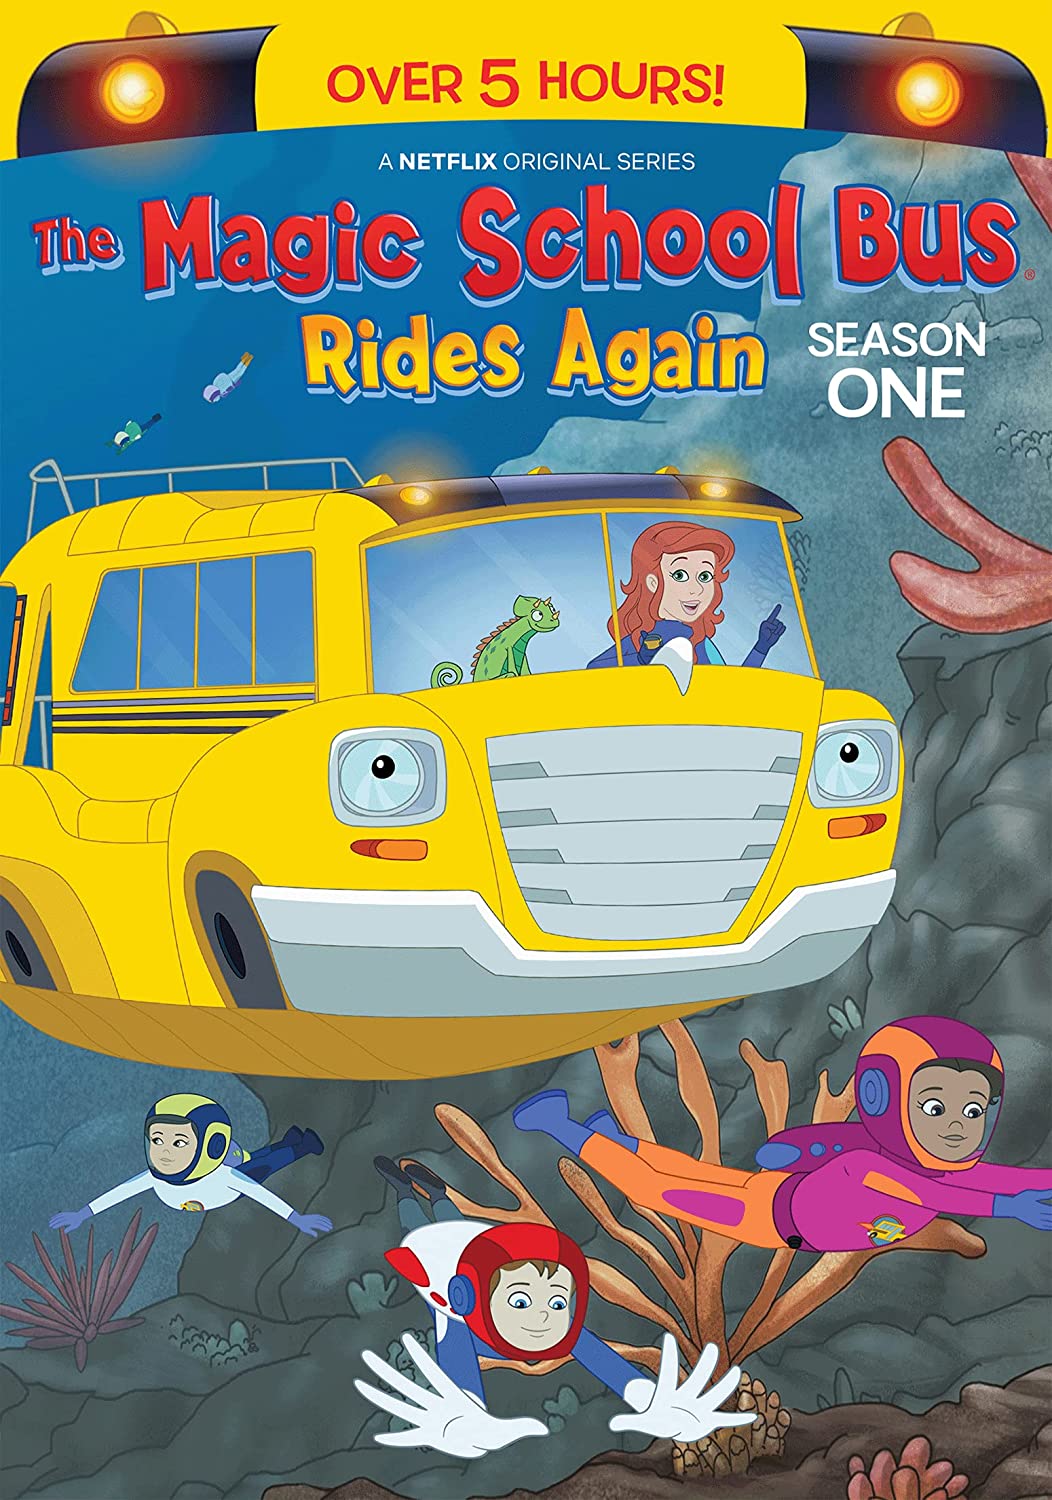 Season 1 (The Magic School Bus Rides Again) The Magic School Bus